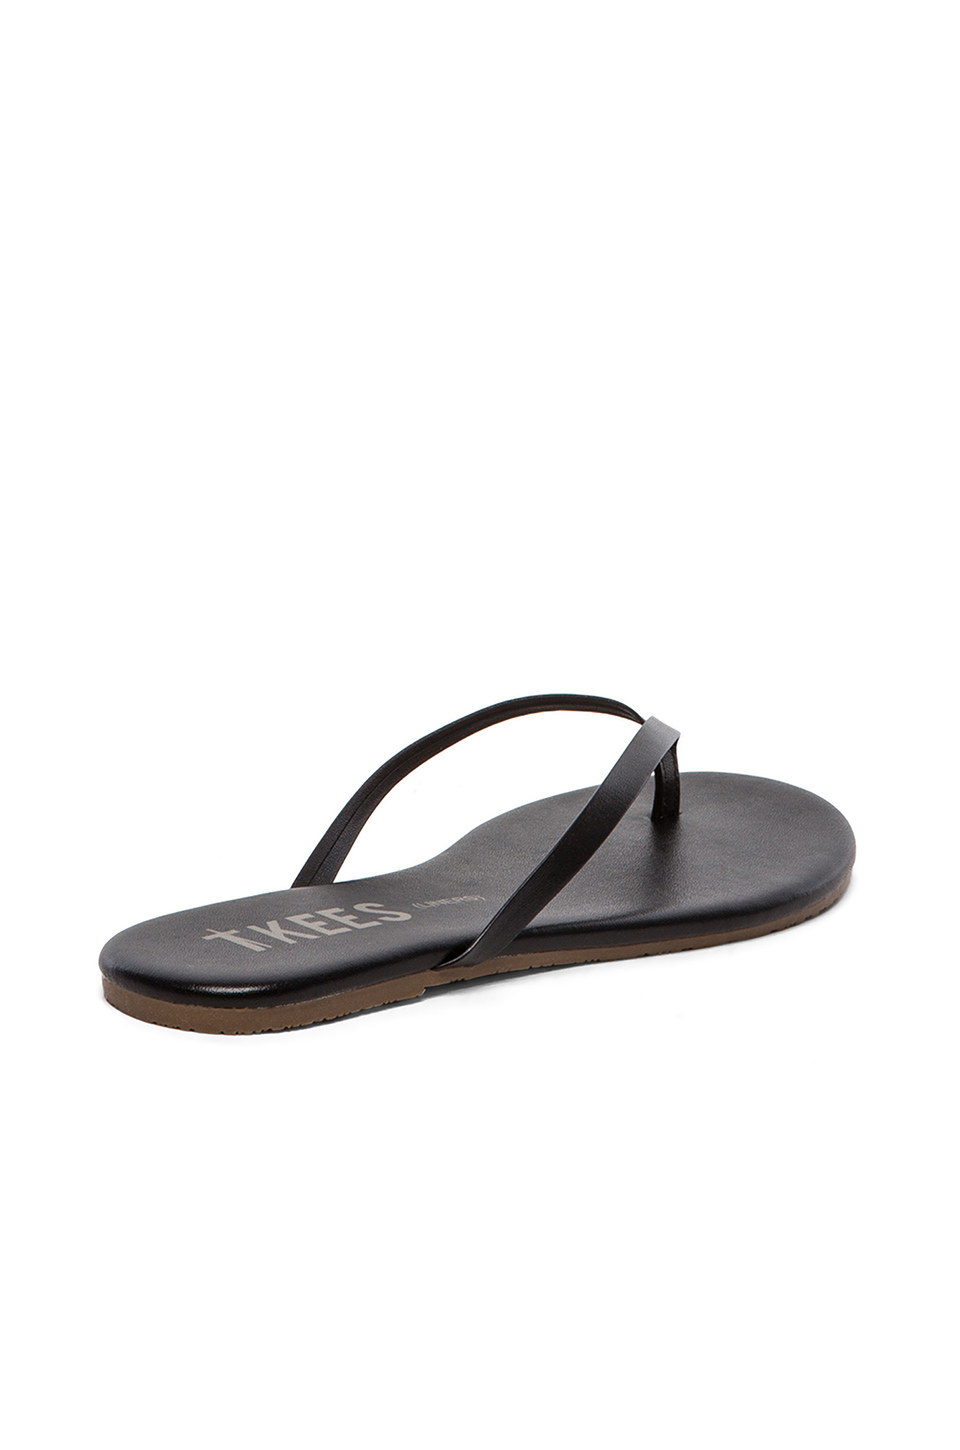 Tkees Sandal in Black (Sable) | Lyst